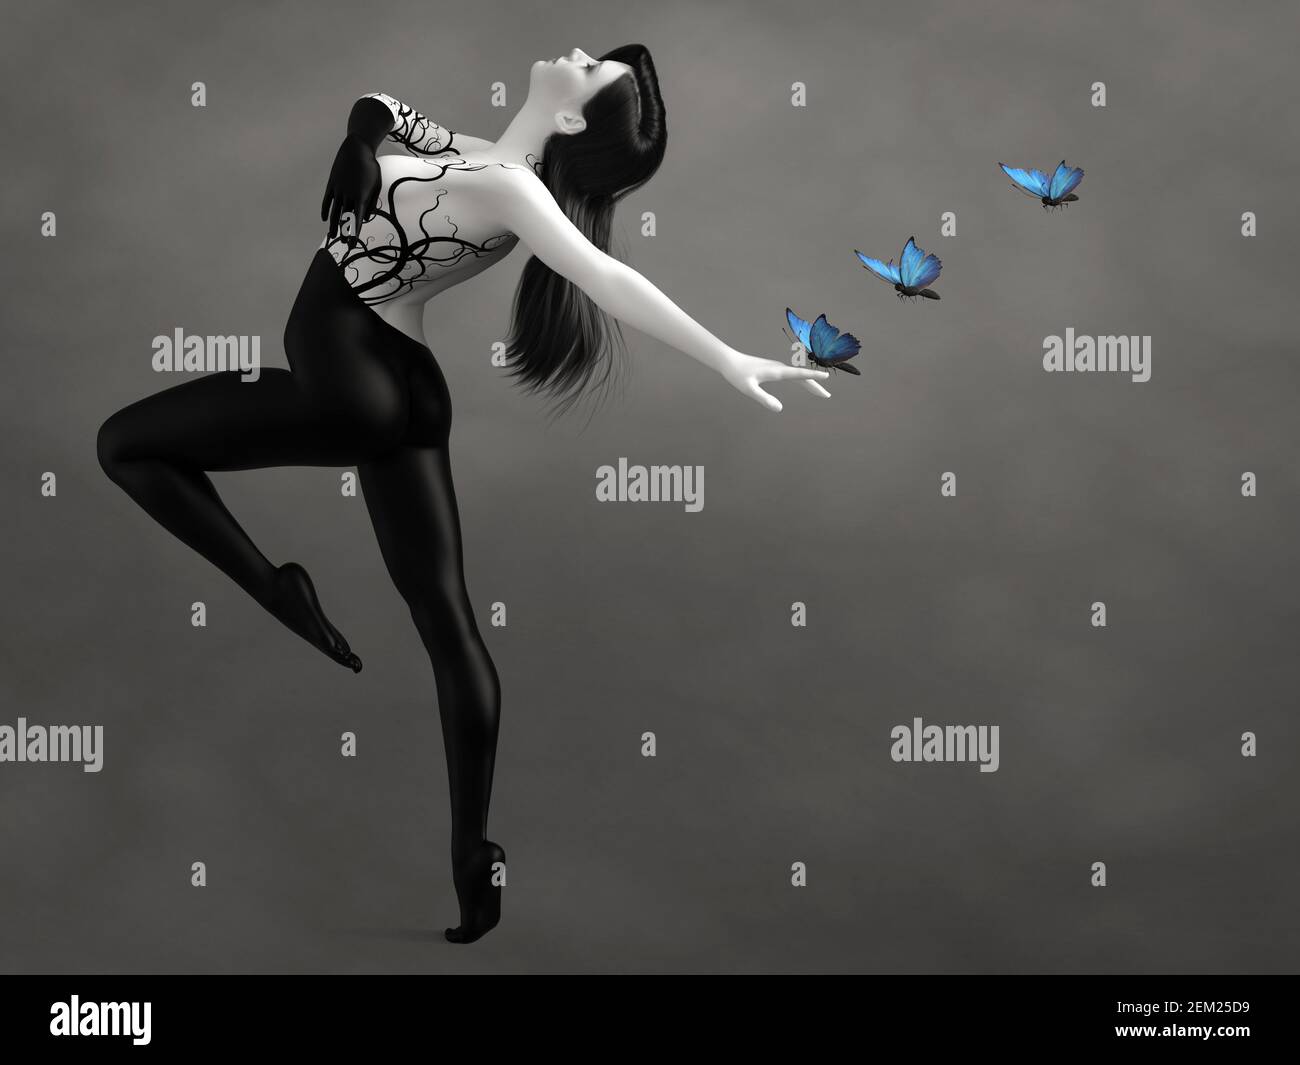 Rendu en 3D d'une femme surréaliste en forme de bodypeint dansant avec des papillons bleus. L'image est en noir et blanc ou monochrome en plus des papillons. Banque D'Images